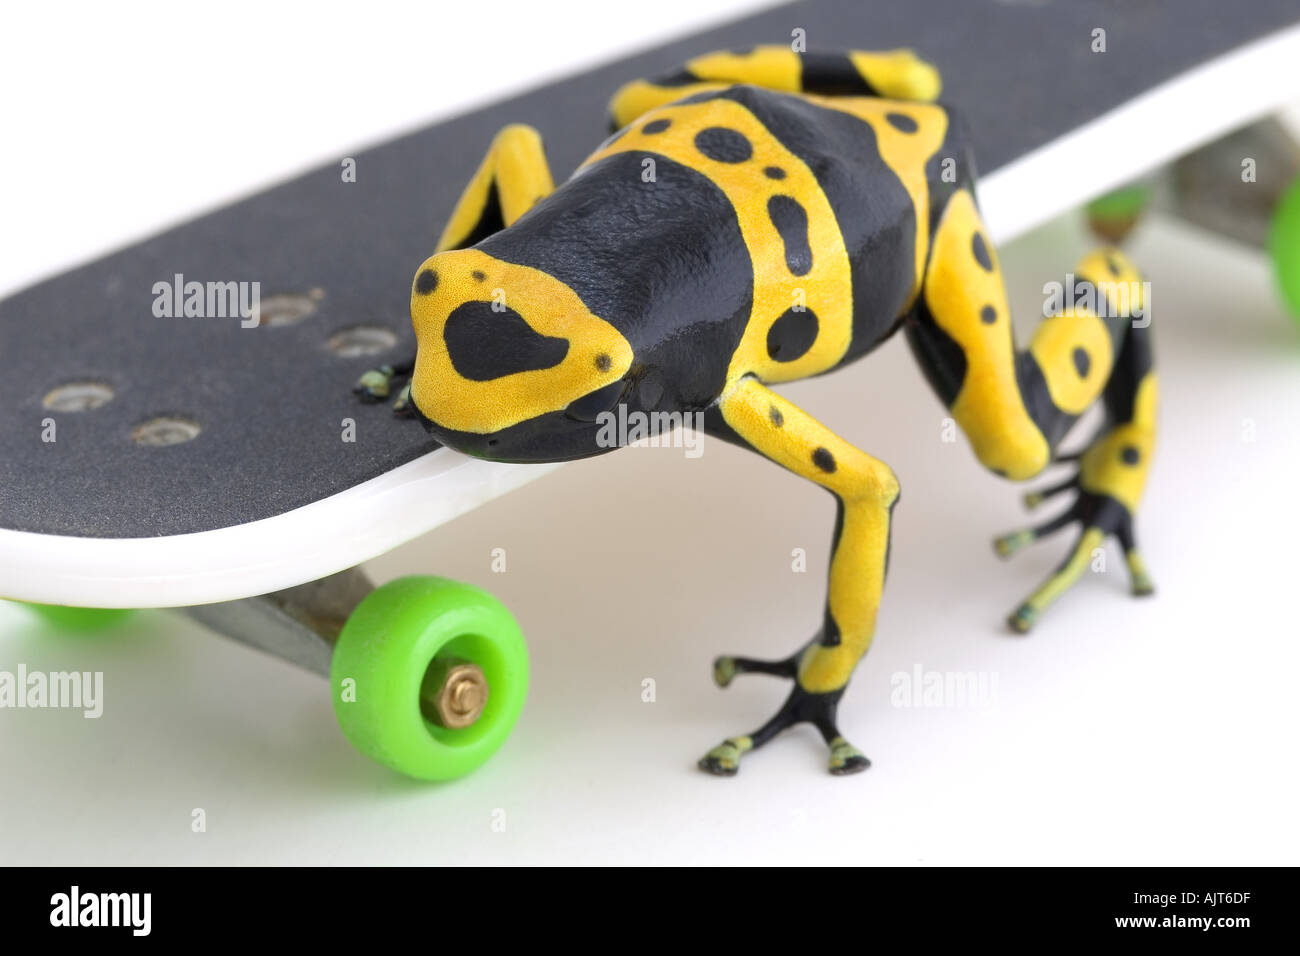 Frosch auf skateboard Stockfotografie - Alamy